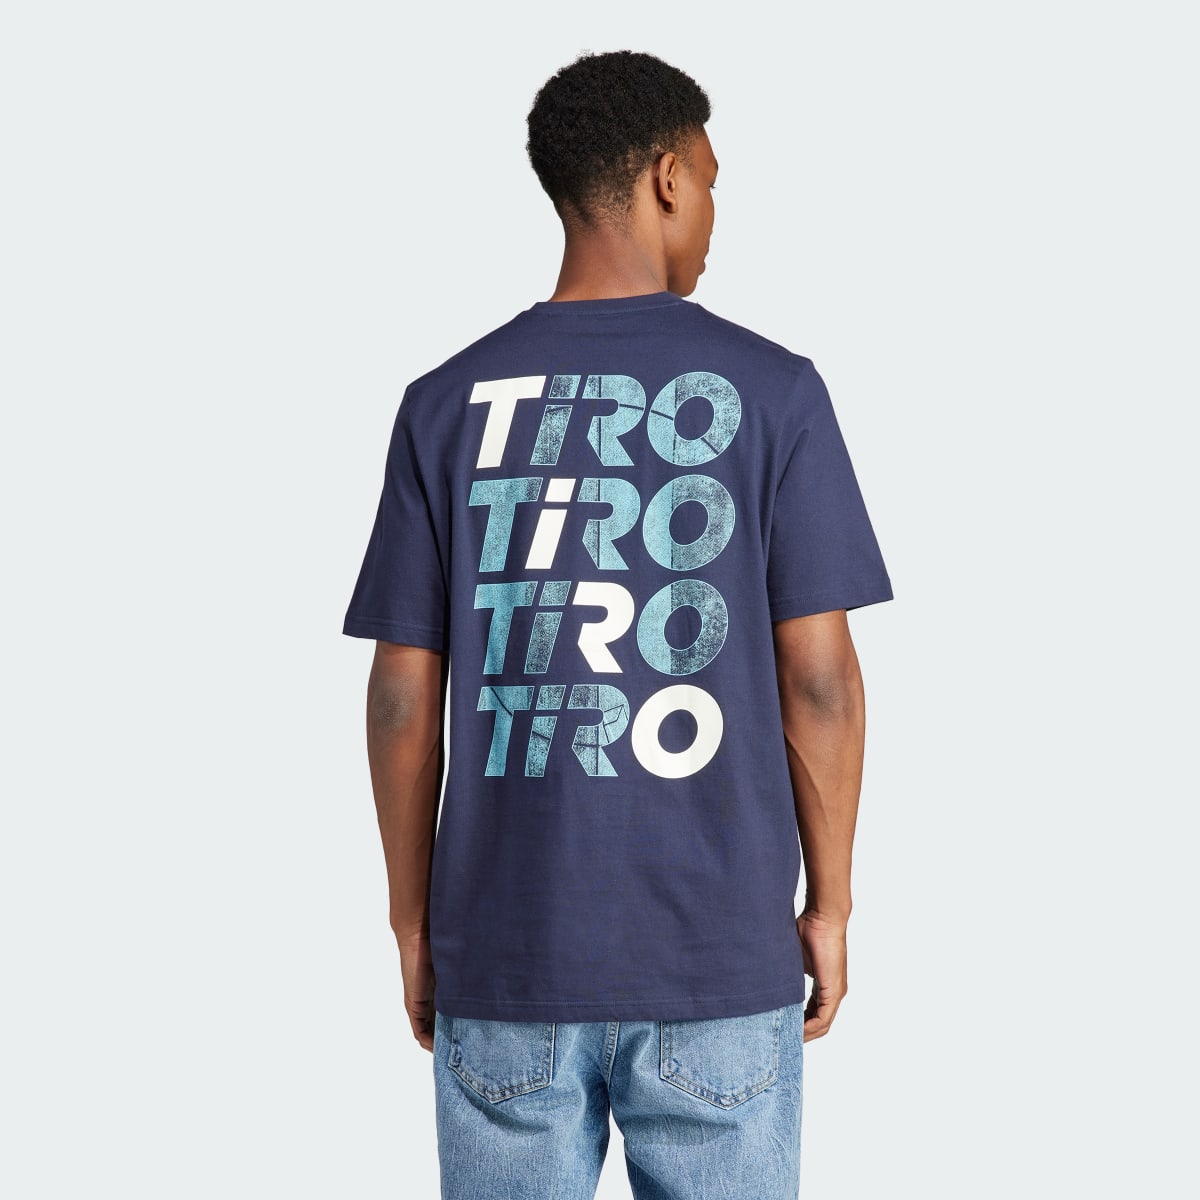 Adidas Tiro Wordmark Graphic T-Shirt. 4